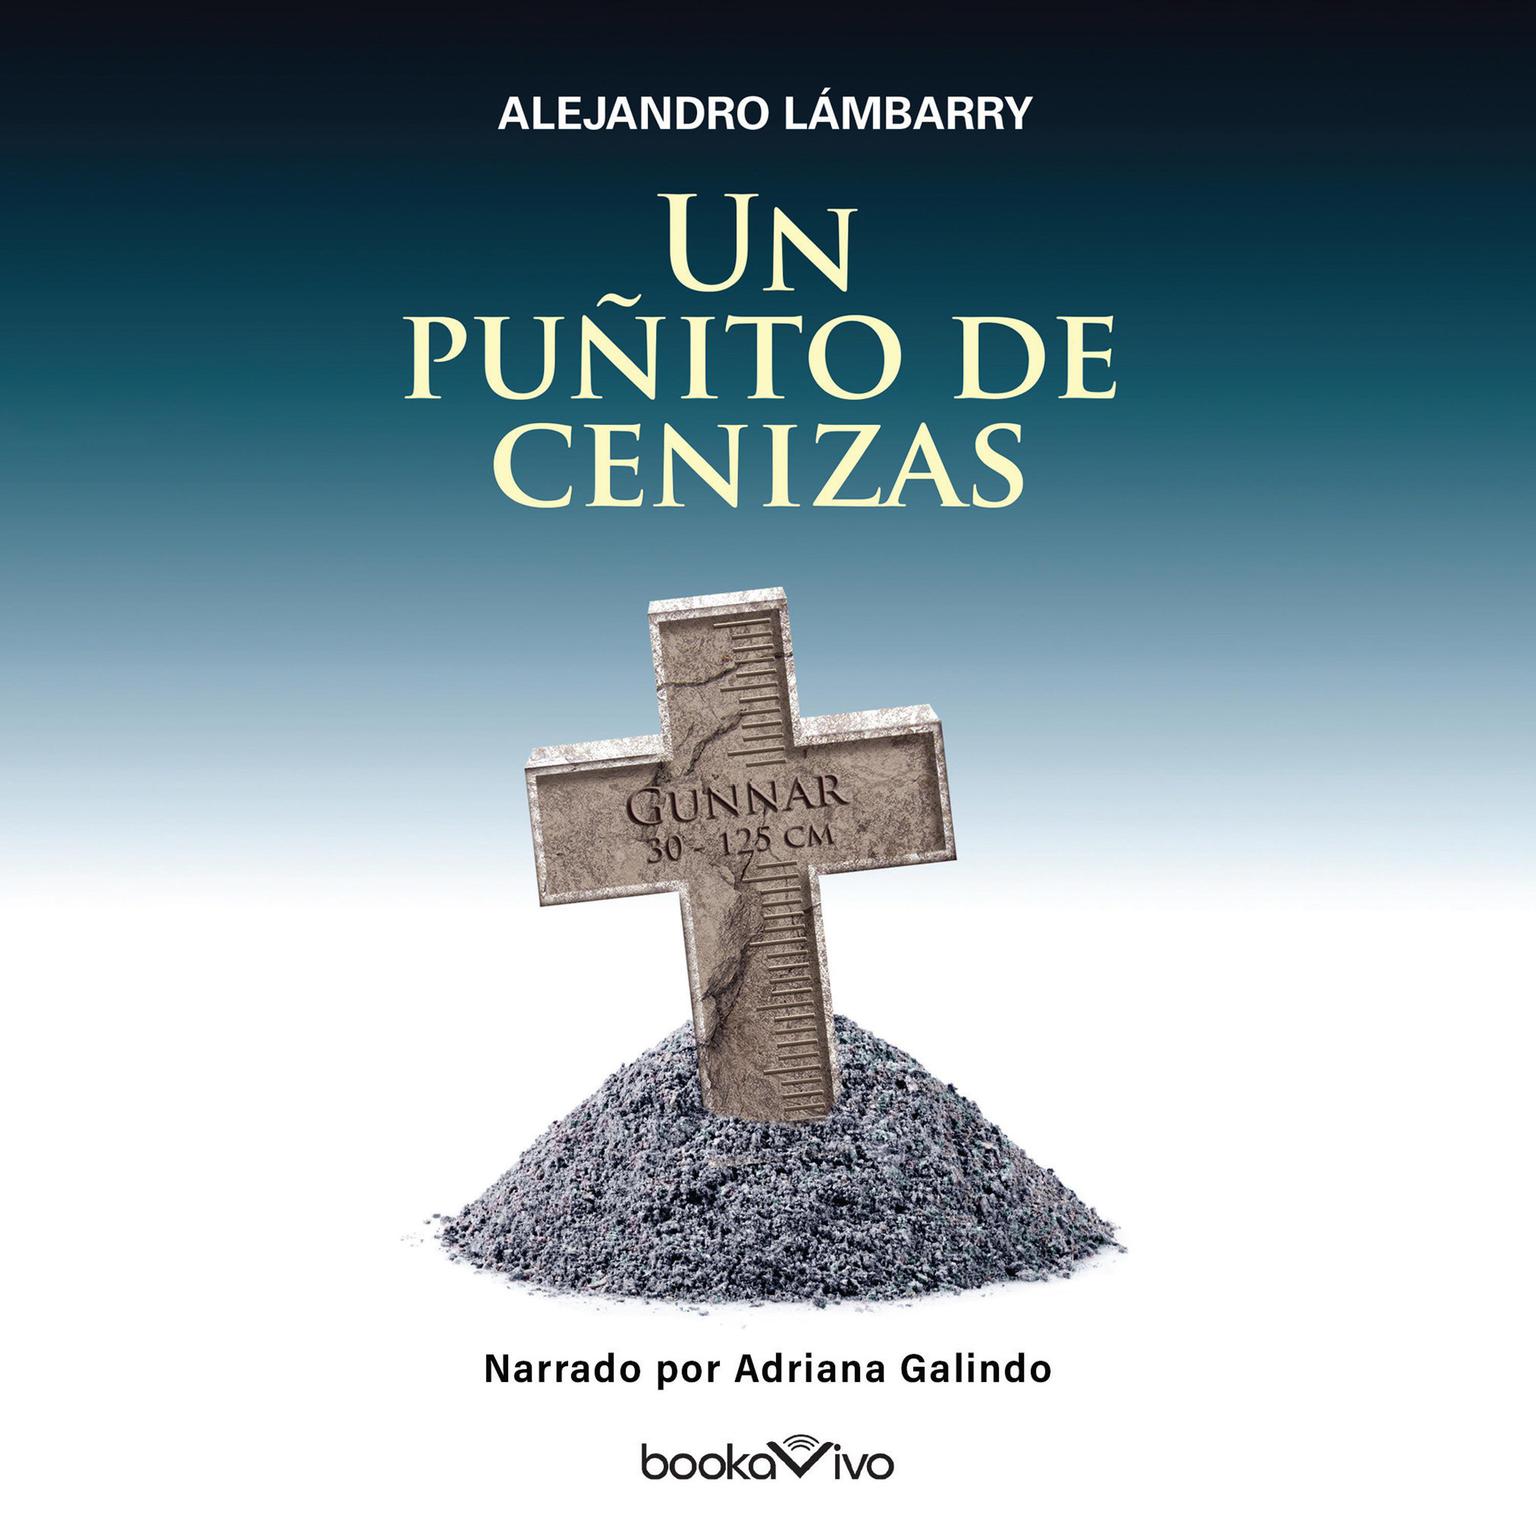 Un puñito de cenizas (A Handful of Ashes) Audiobook, by Alejandro Lambarry